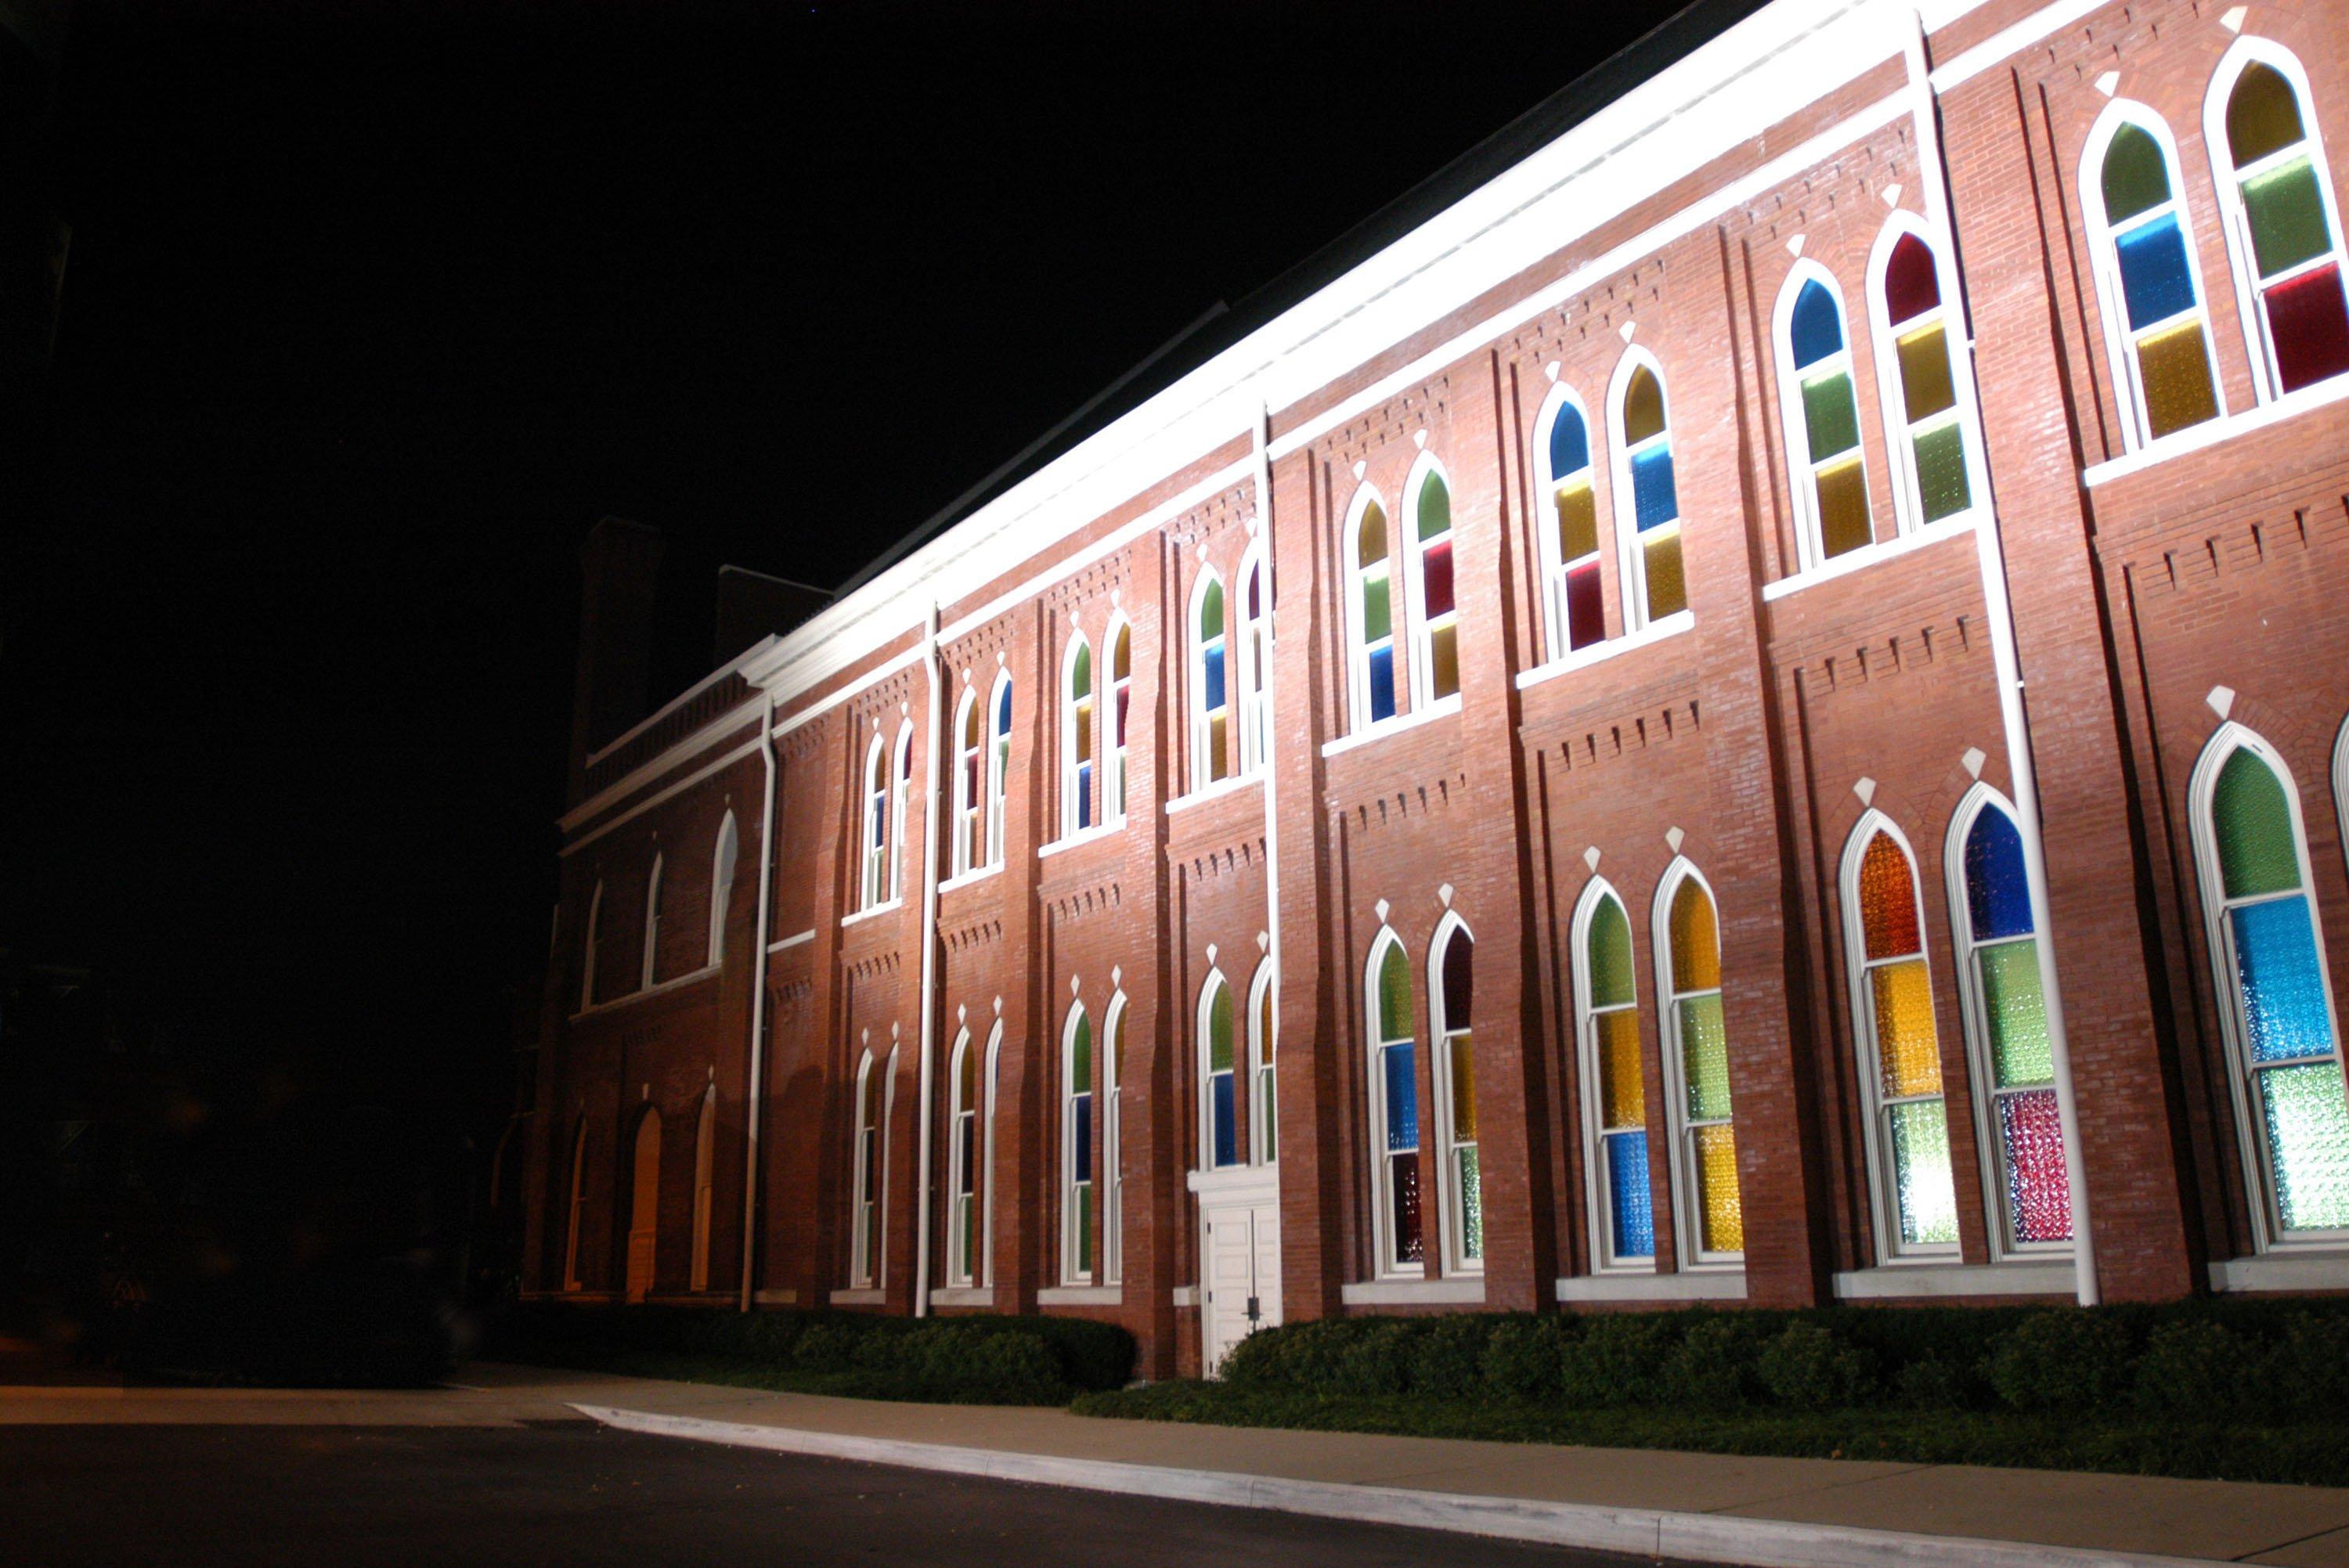 Ryman Auditorium in 2003